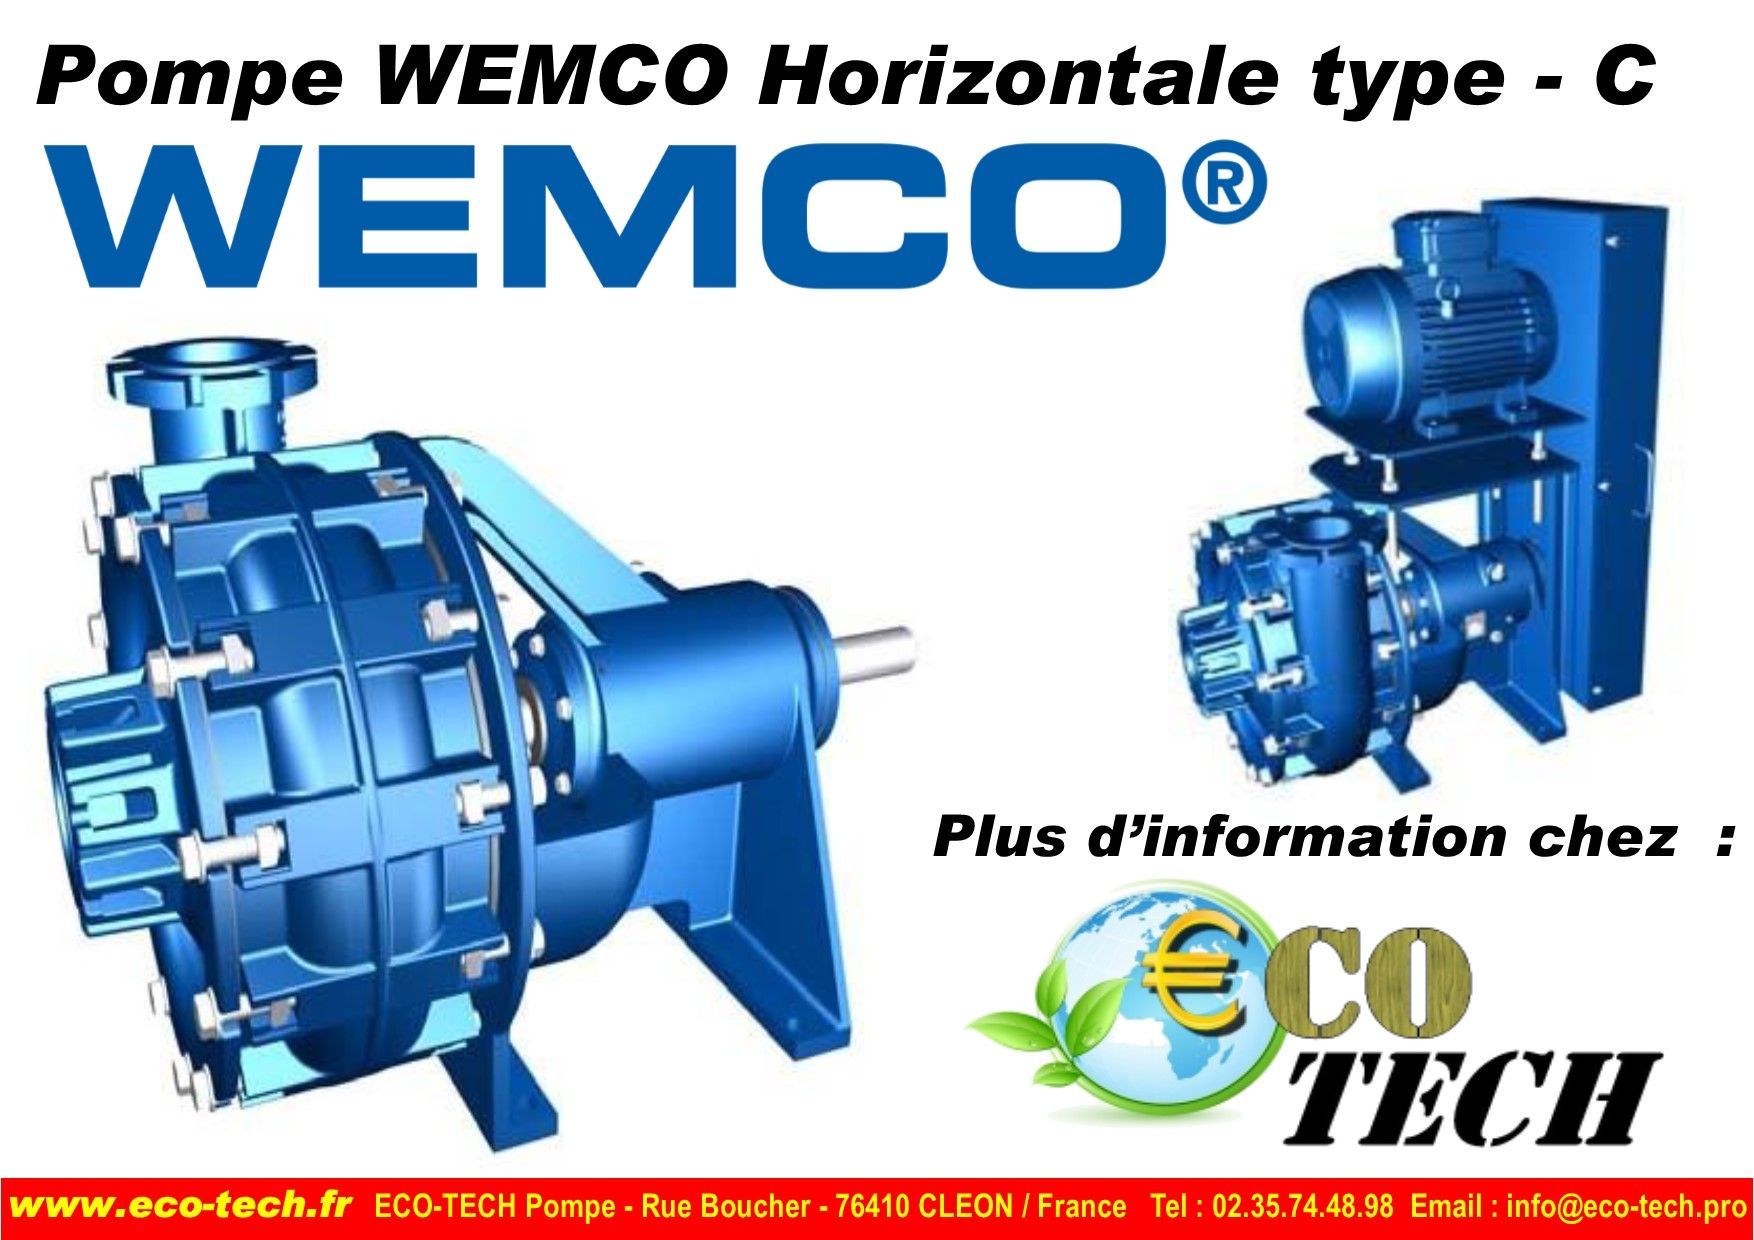 Pompe wemco horizontale - type c - surdimensionnée pour applications difficiles._0